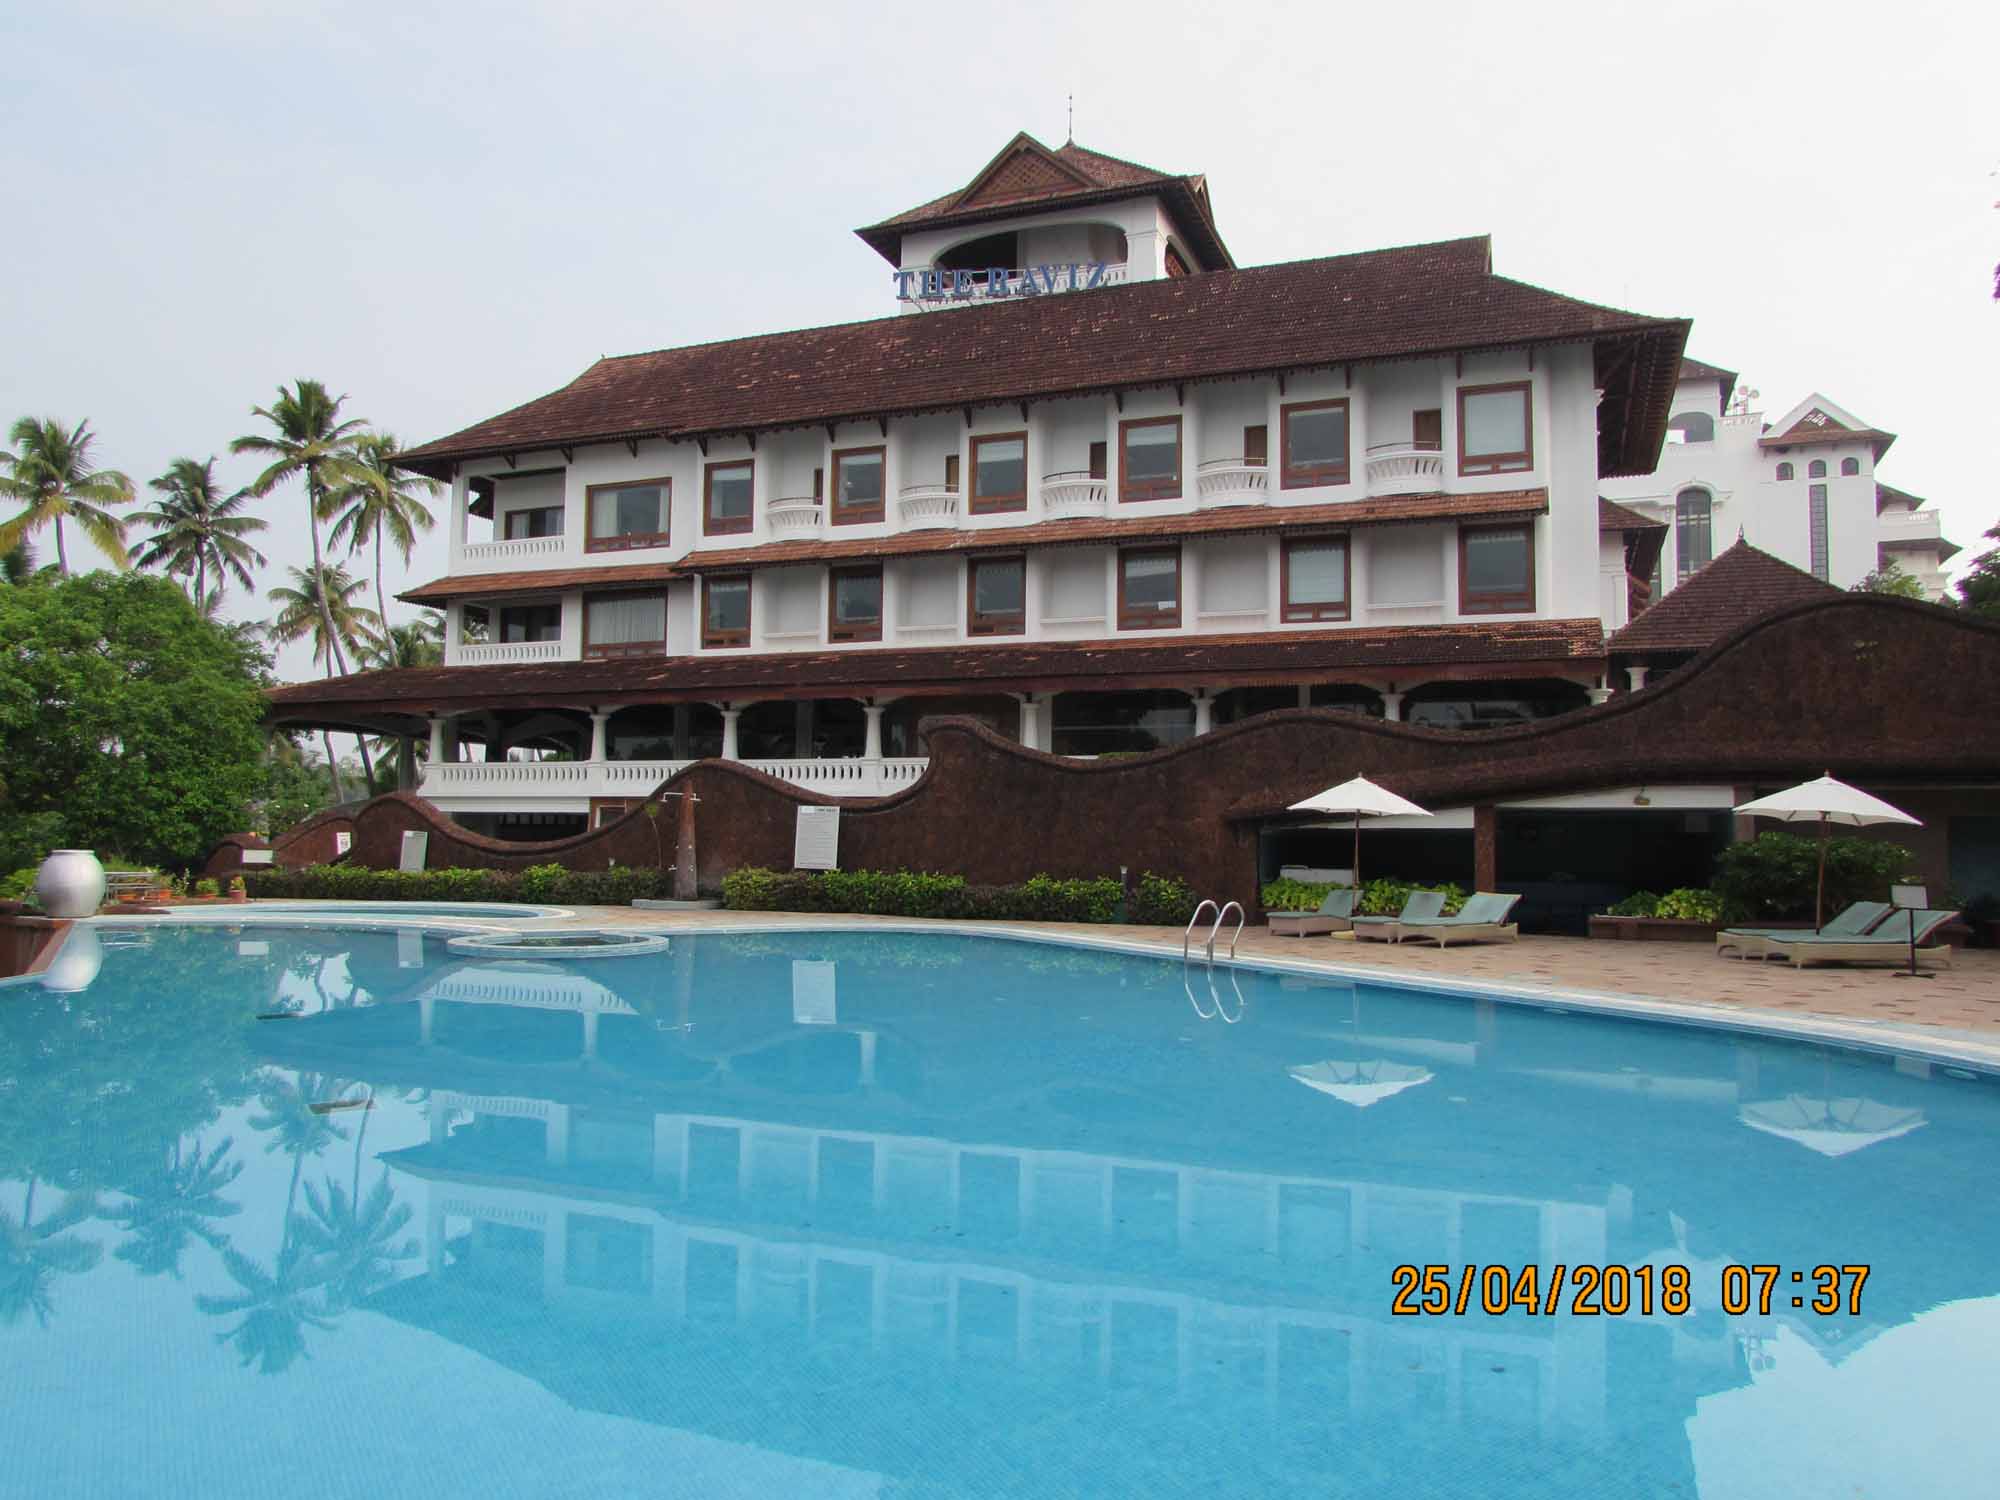 The Raviz Resort and Spa, Ashtamudi, Kollam, Kerala, India